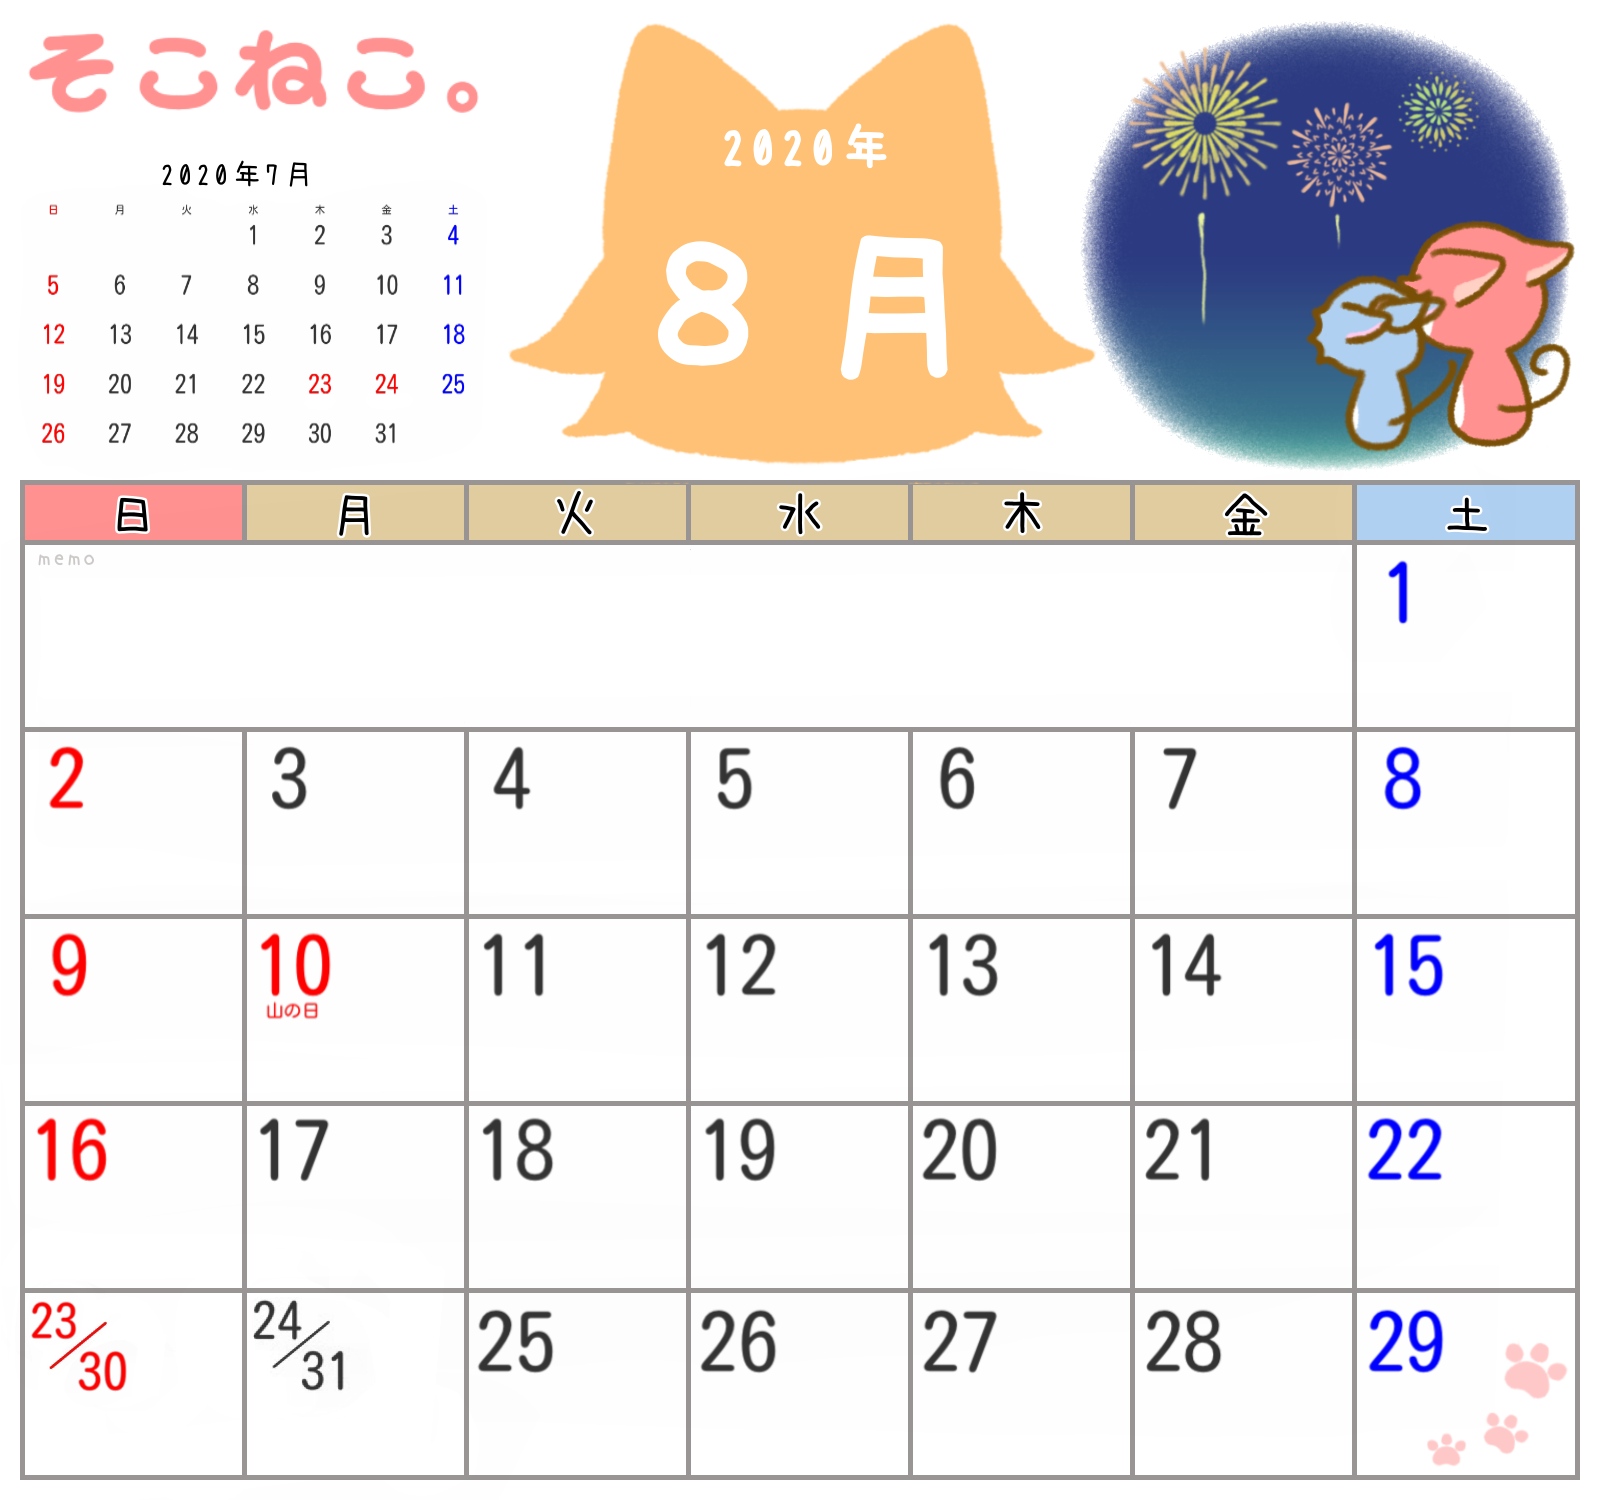 刺繍 誰が 養う カレンダー 8 月 21seikido Jp